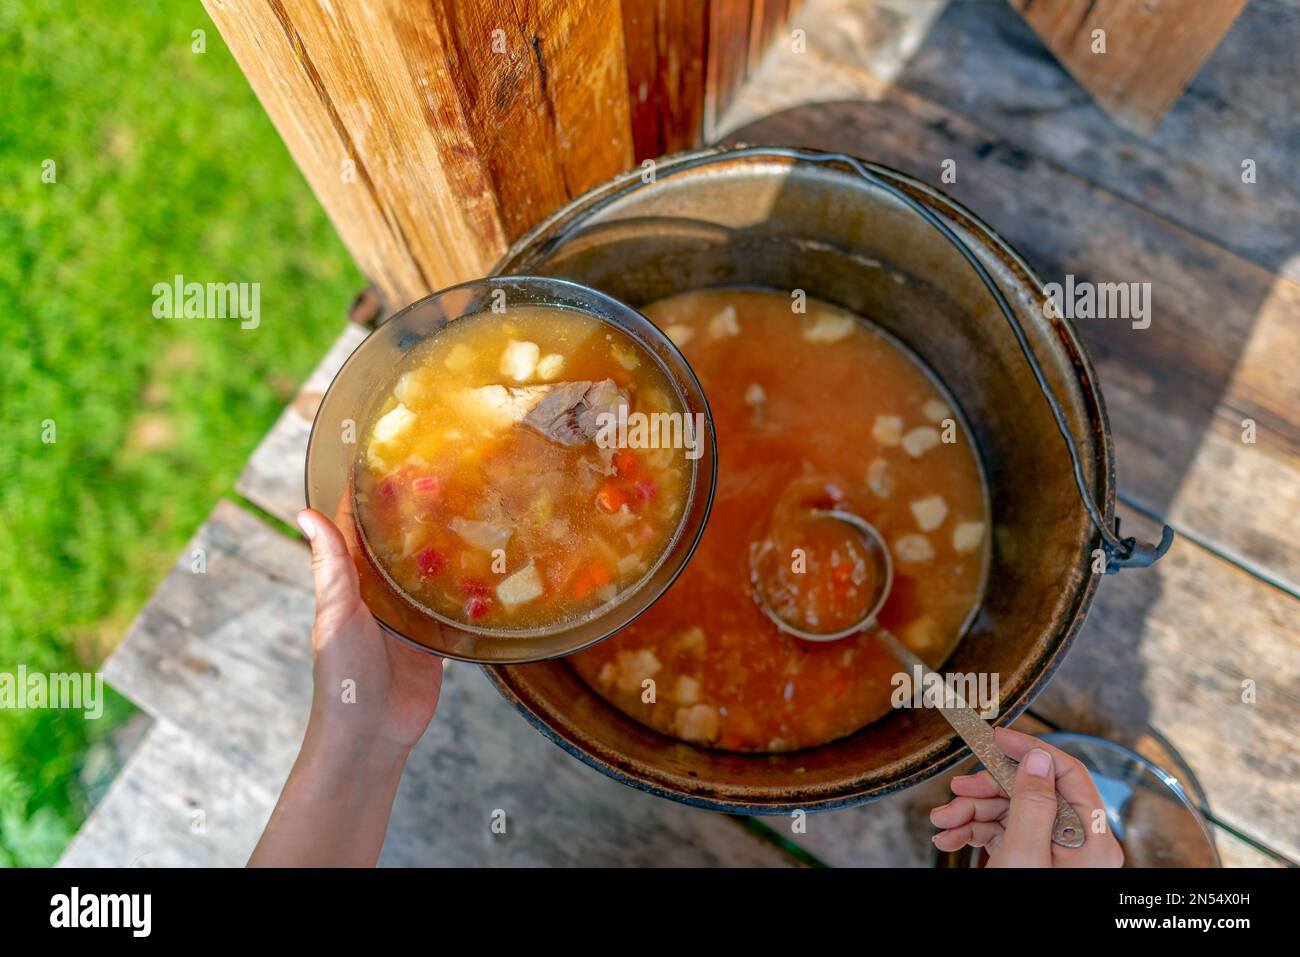 Les filles cuisent à l'extérieur propose soupe, déjeuner avec viande et légumes et pommes de terre, borscht d'une grande casserole sur le plancher en bois, dans la maison à côté Banque D'Images